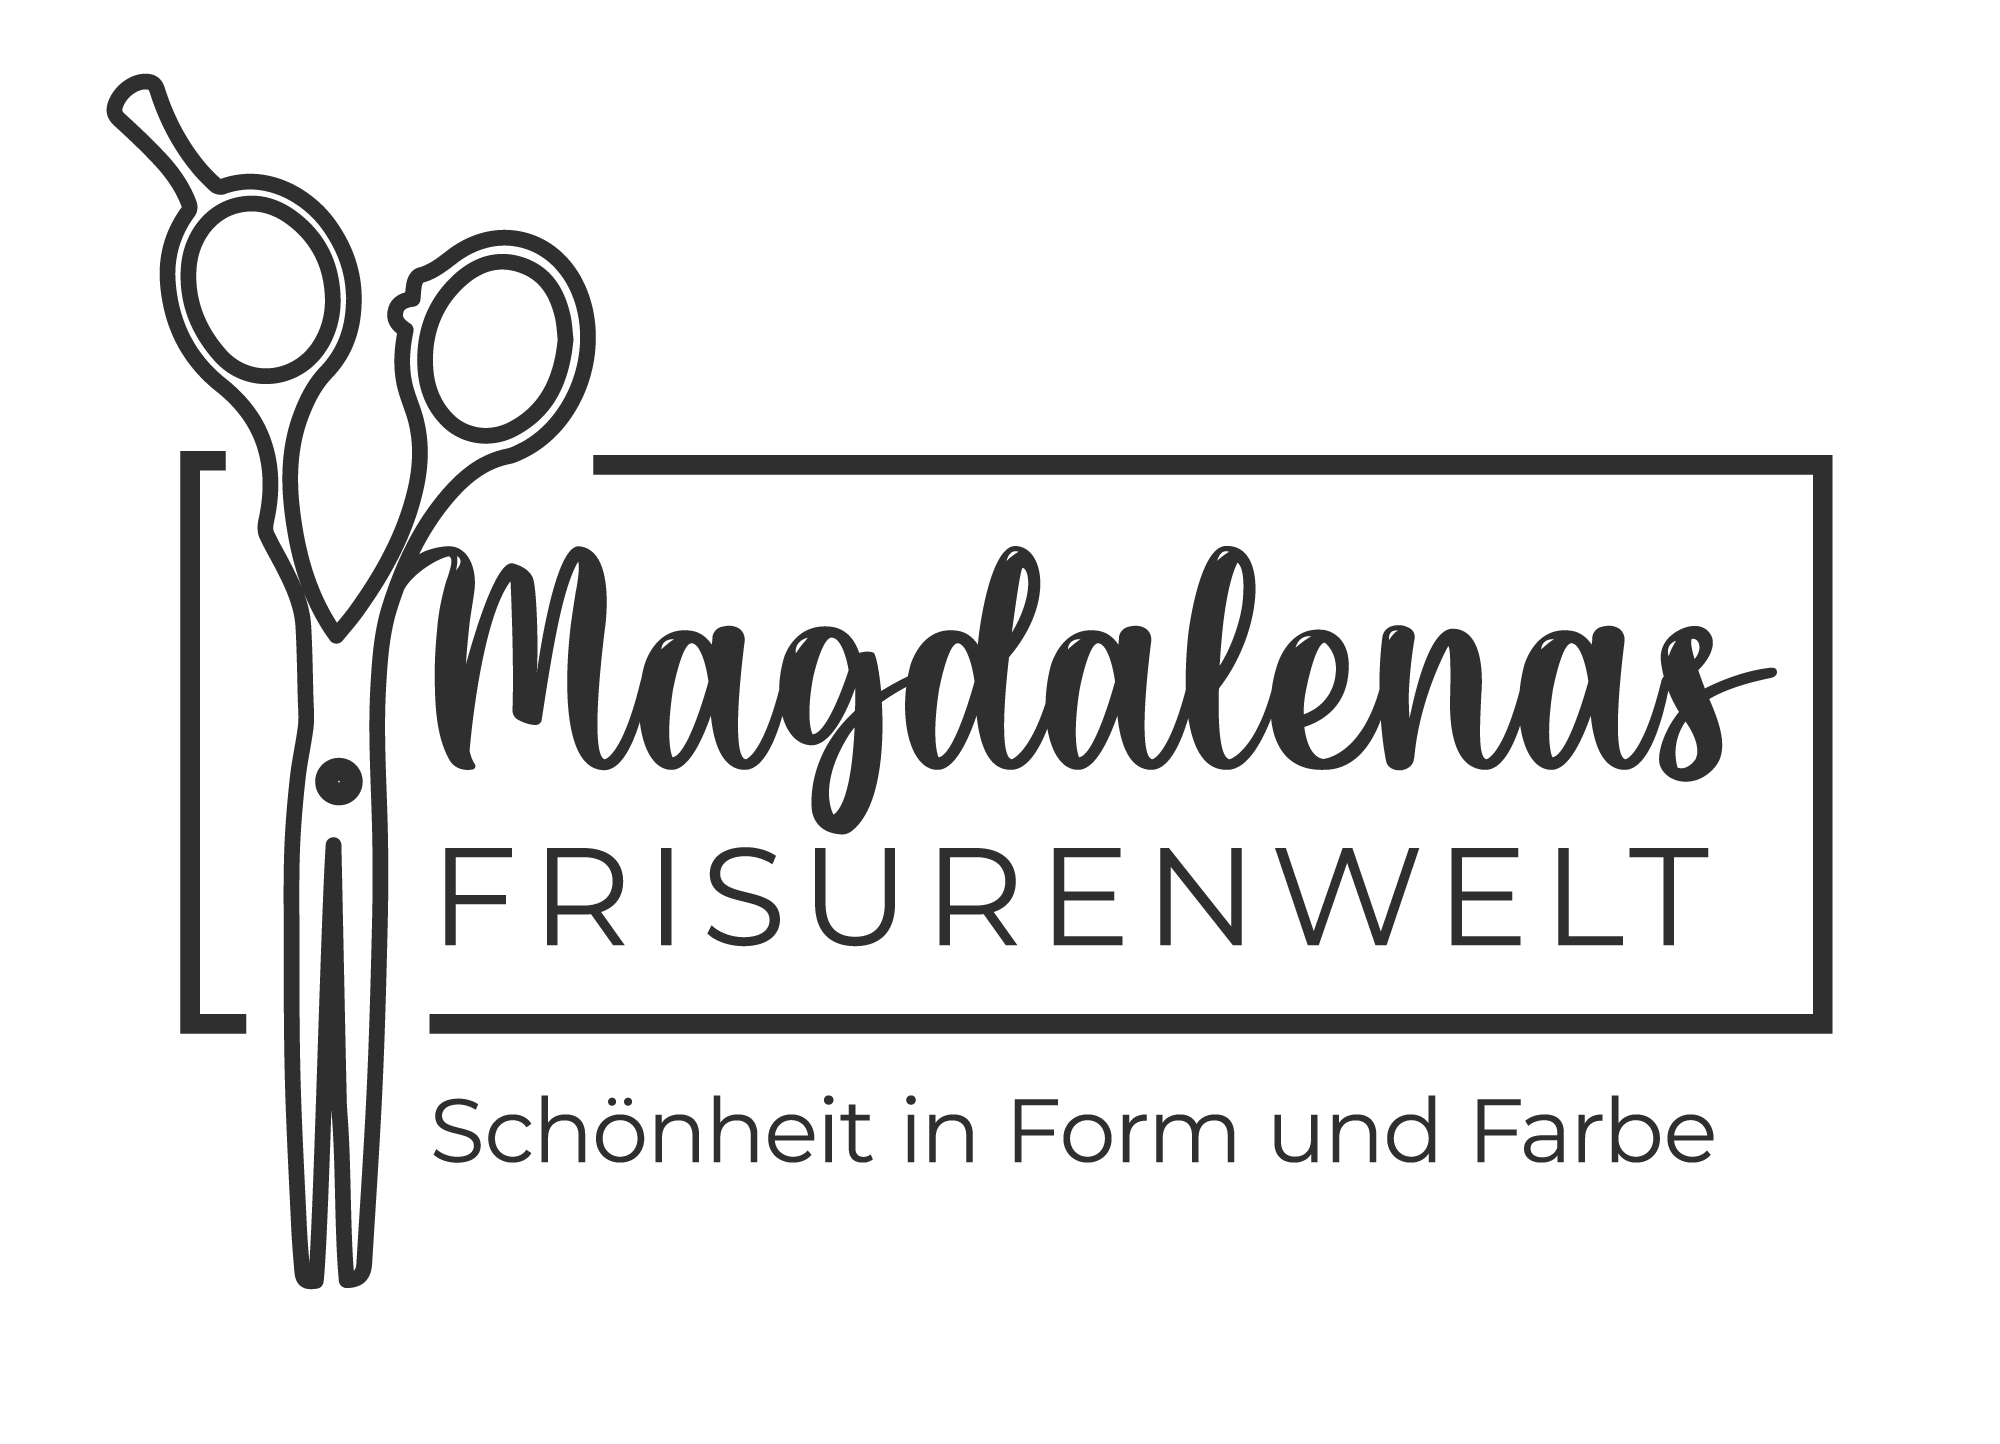 Magdalenas Frisurenwelt